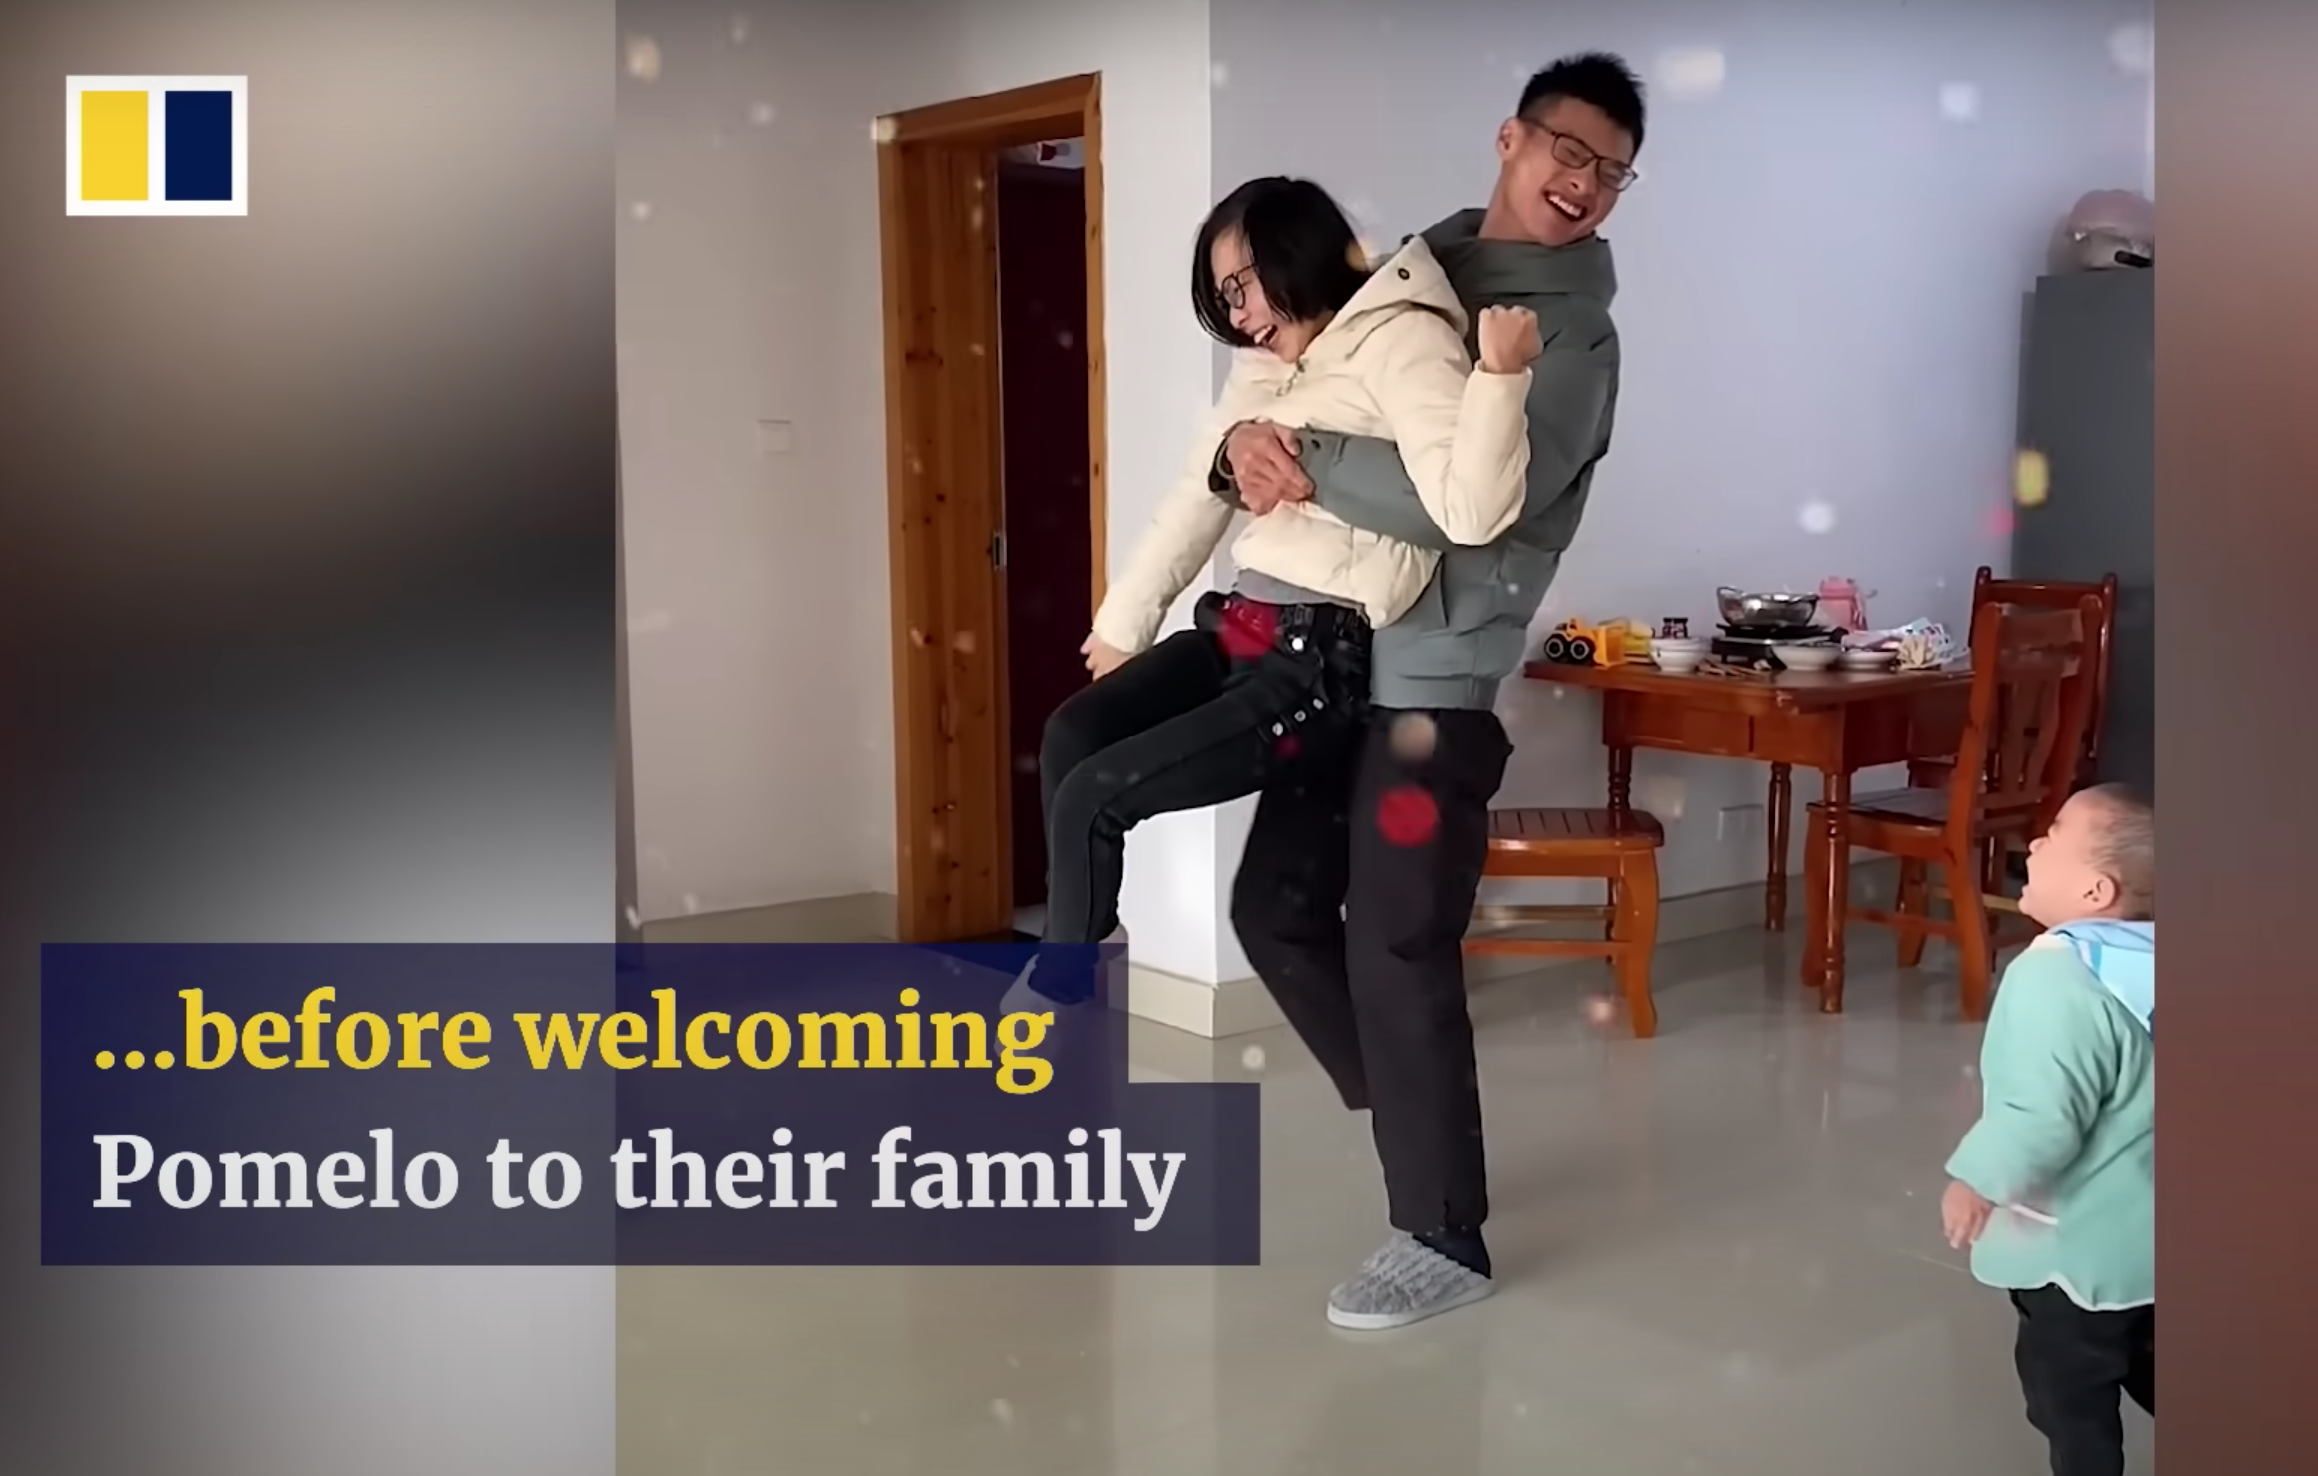 Los padres de Pomelo intentan llevar una vida lo más normal posible. | Foto: Youtube.com/South China Morning Post